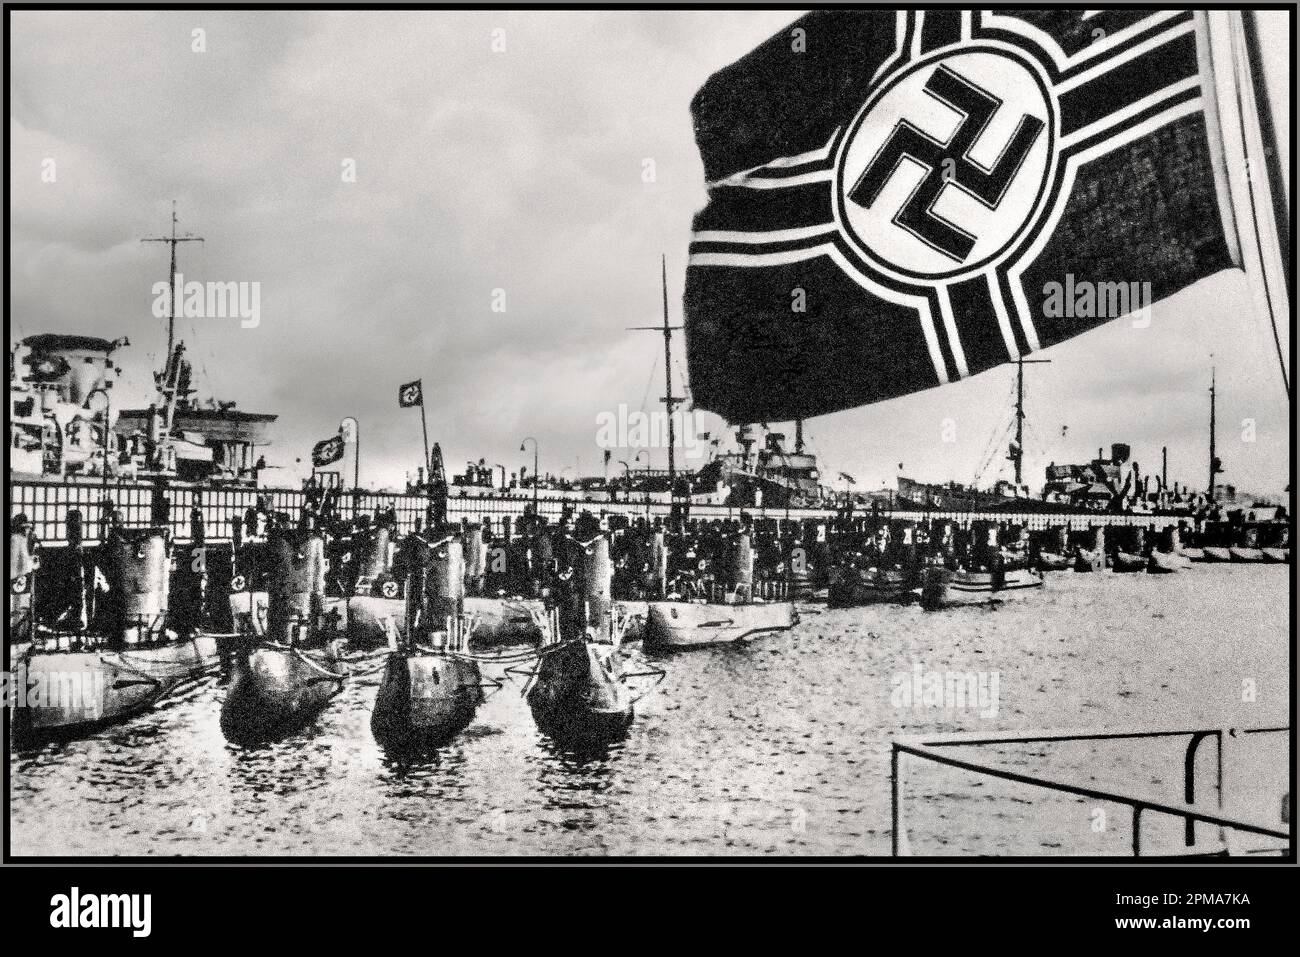 1940er WW2 Nazi-deutscher U-Boot-Kugelschreiber mit der Kriegsmarine-Flagge von Nazi-Deutschland, in der das Swastika-Emblem im Vordergrund liegt. Diese Flagge diente vom 7. November 1935 bis zum 8. Mai 1945 als Fähnrich des Krieges an Bord aller deutscher Kriegsschiffe der Nazis. Es wurde im Hafen und auf See vom Flagstaff oder vom Masten geflogen. Reichskriegsflagge. 2. Weltkrieg 2. Weltkrieg Stockfoto